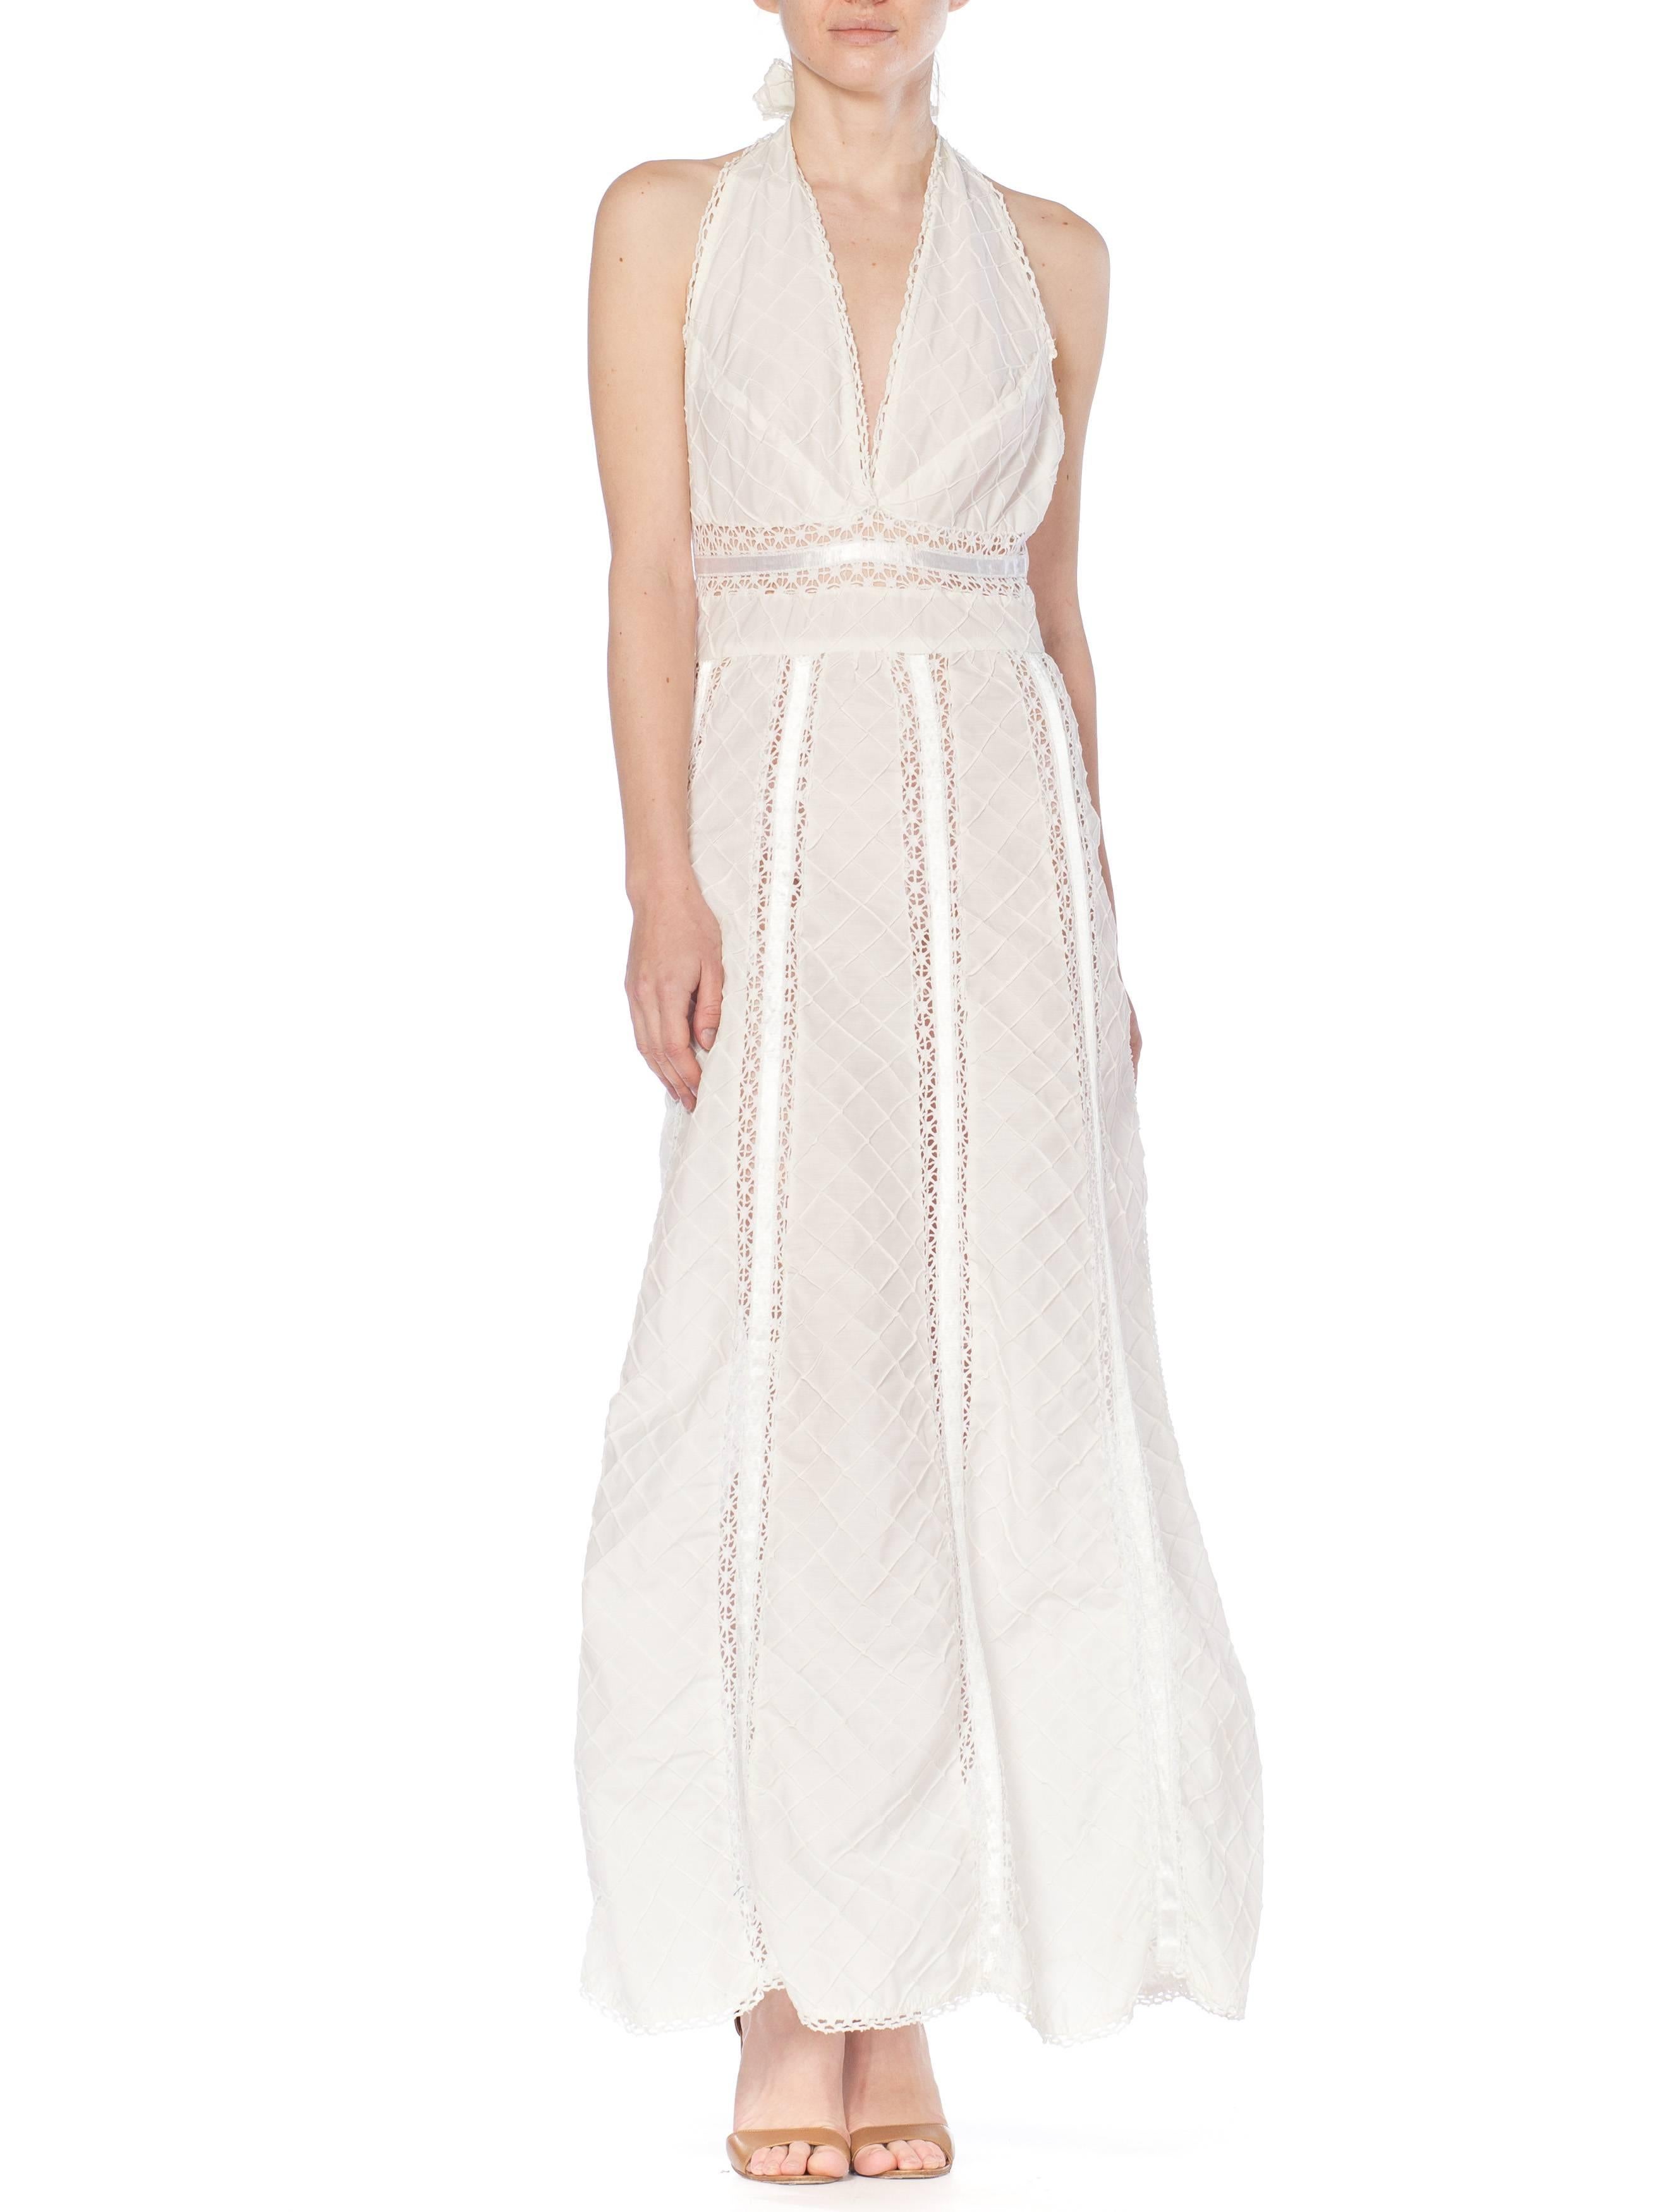 white cotton halter dress